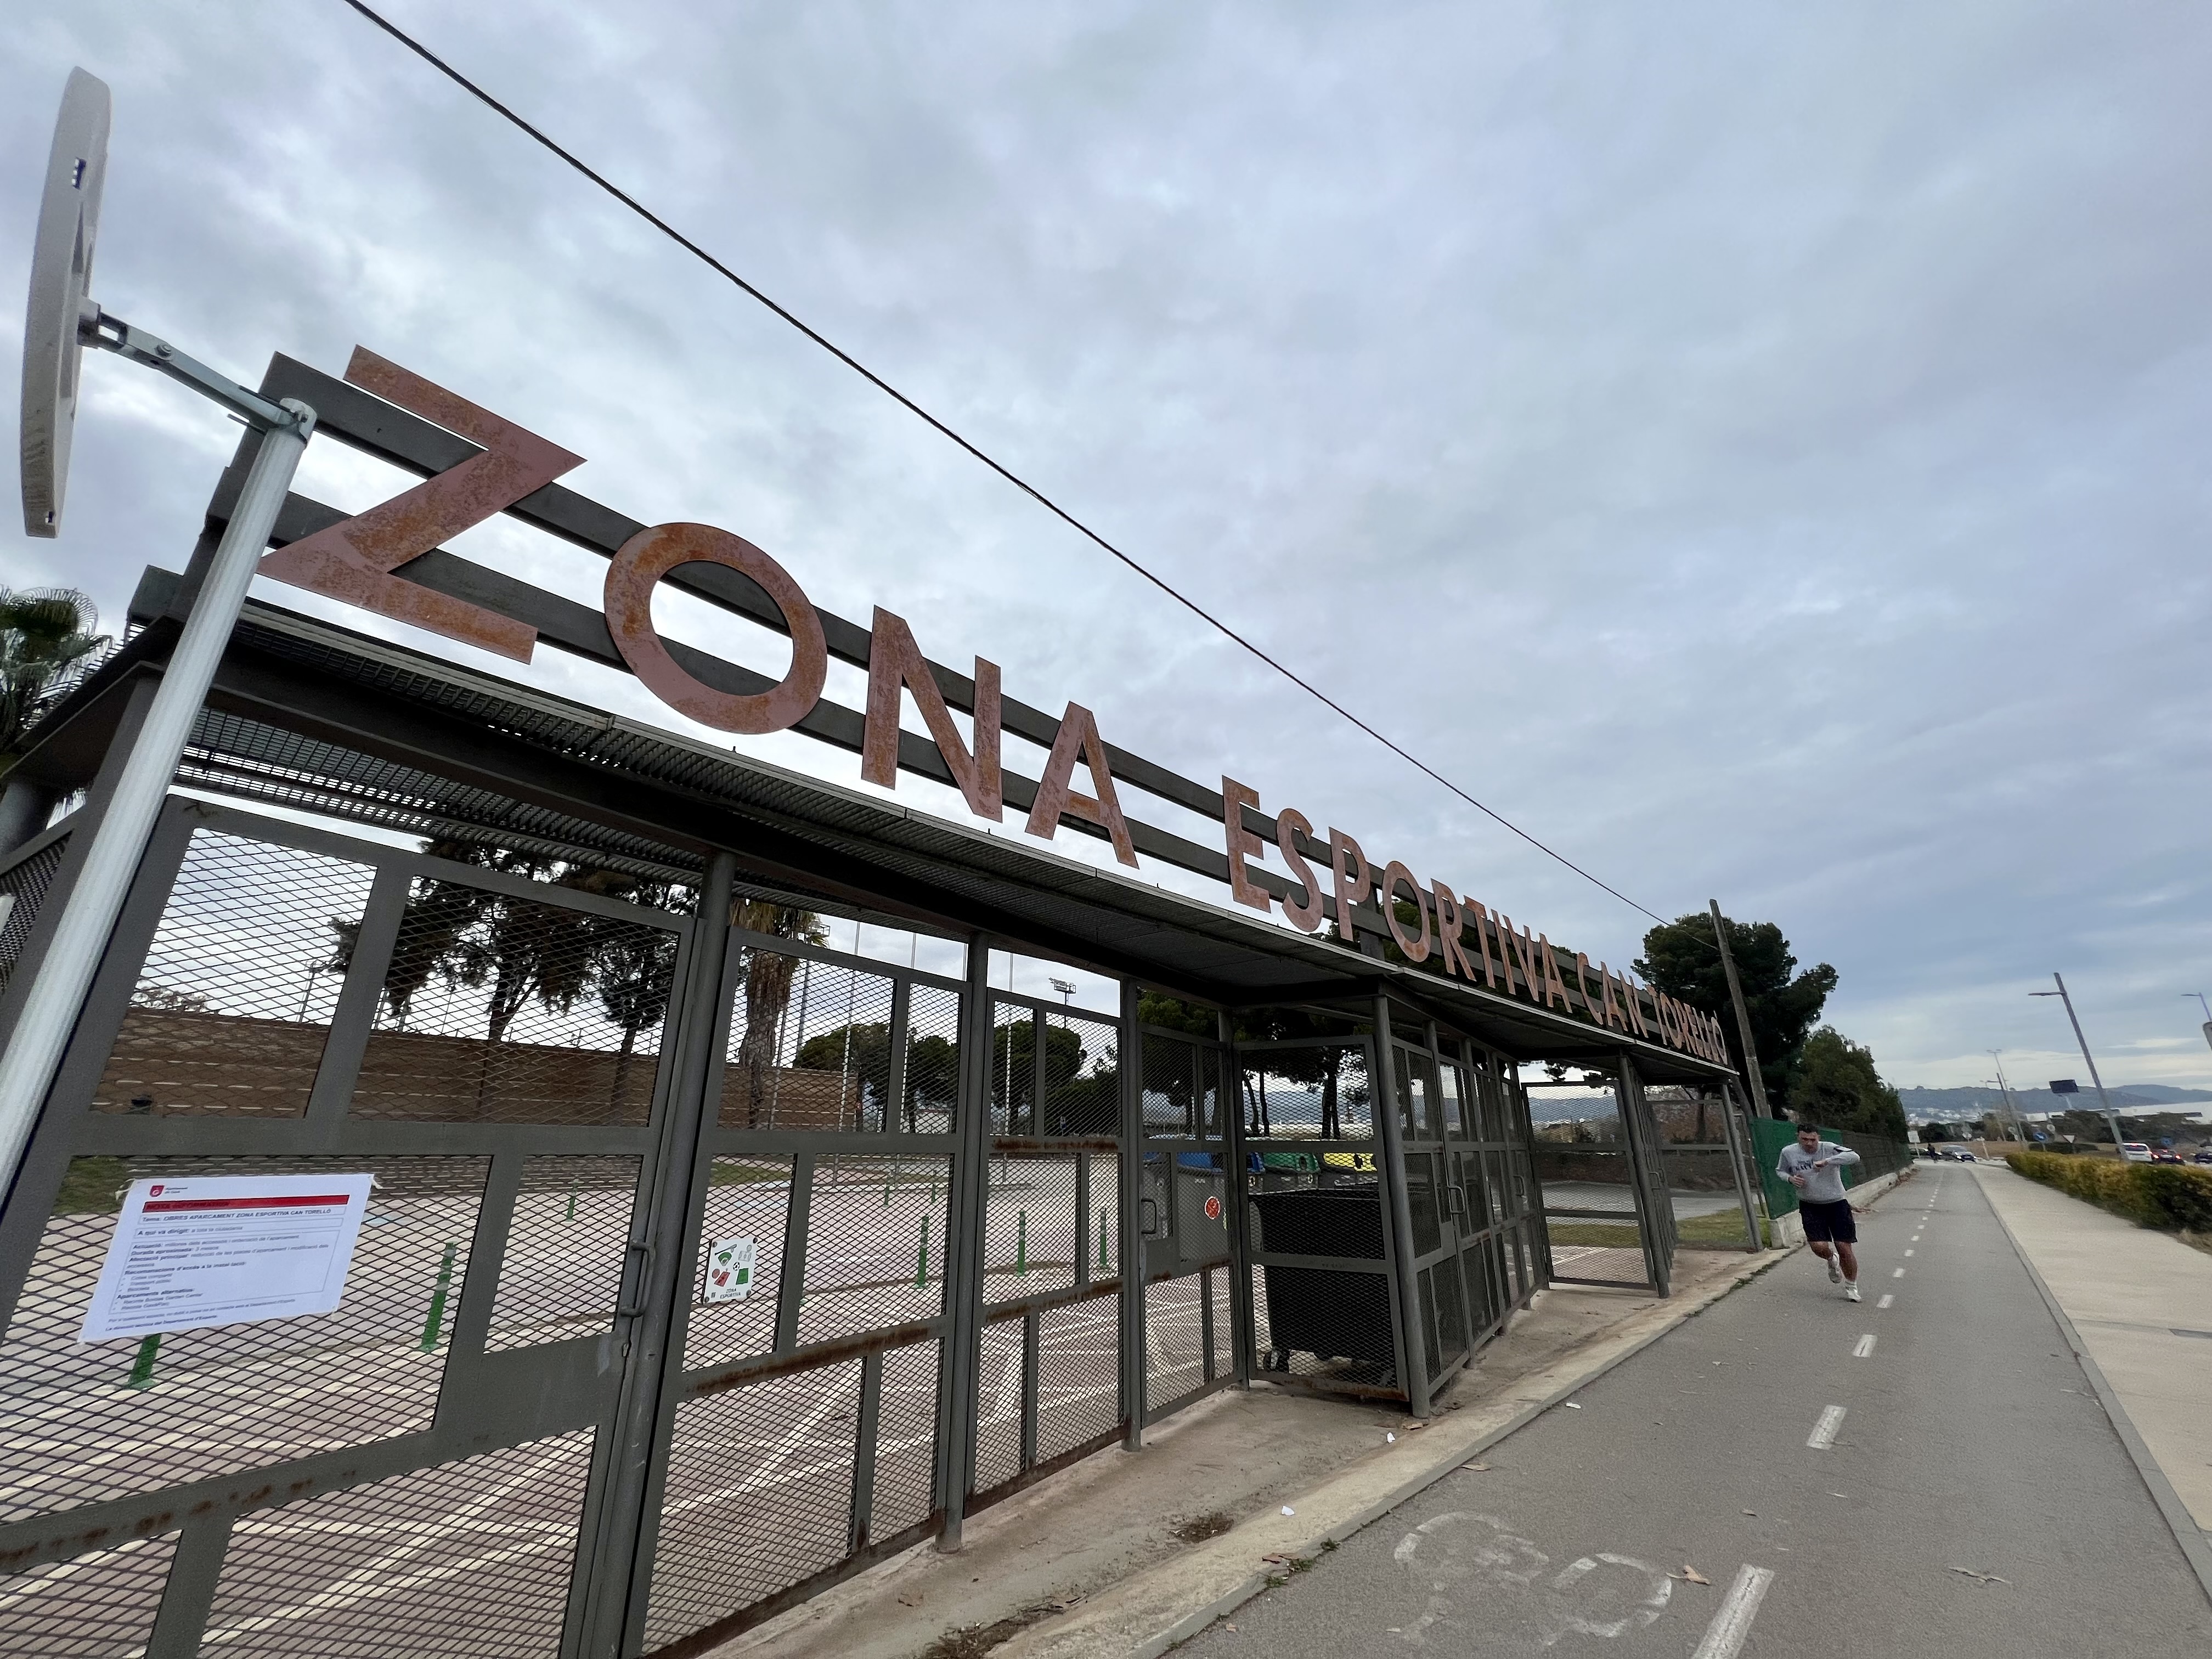 Arranca una nueva fase de remodelación de la Zona Deportiva de Can Torelló